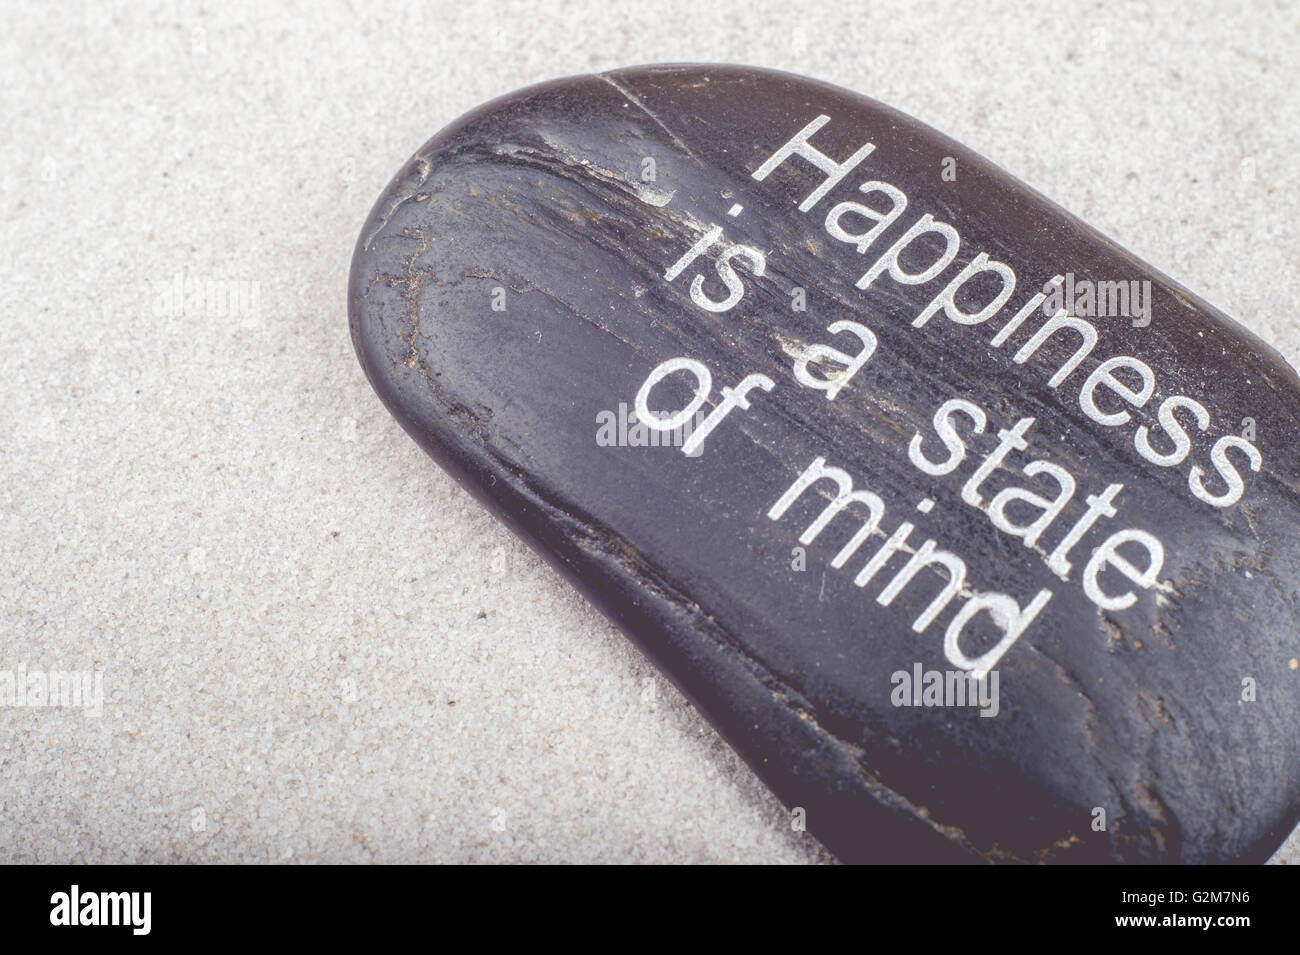 Imagen de 'Zen la felicidad es un estado de la mente' mensaje grabado en una piedra en la arena Foto de stock